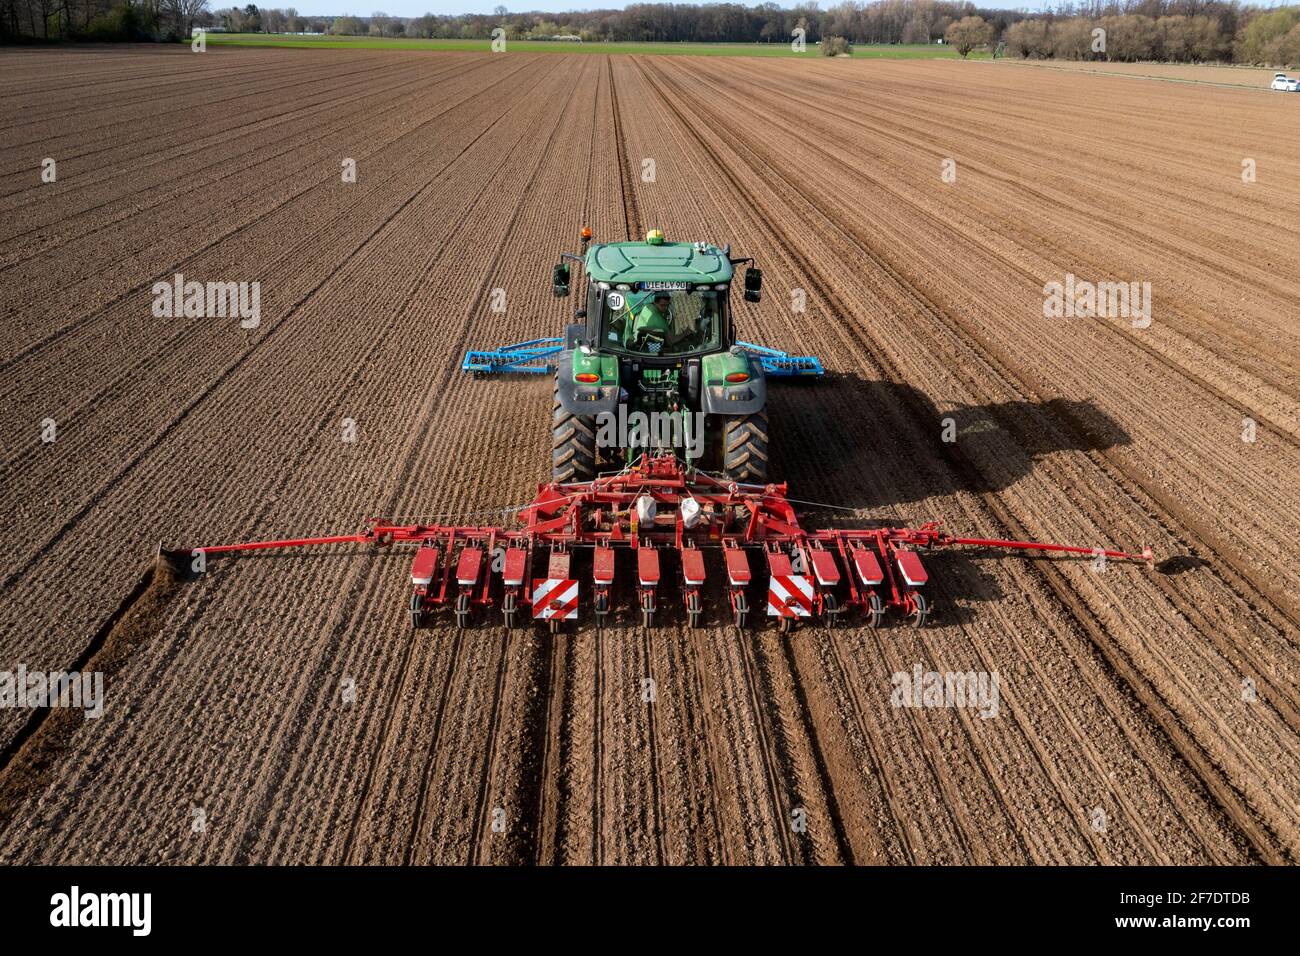 Zuckerrüben, die im Frühjahr gesät werden, Präzisionssäen mit  Präzisionsbohrmaschine, hinter einem Traktor, Niederkrüchten, NRW,  Deutschland Stockfotografie - Alamy